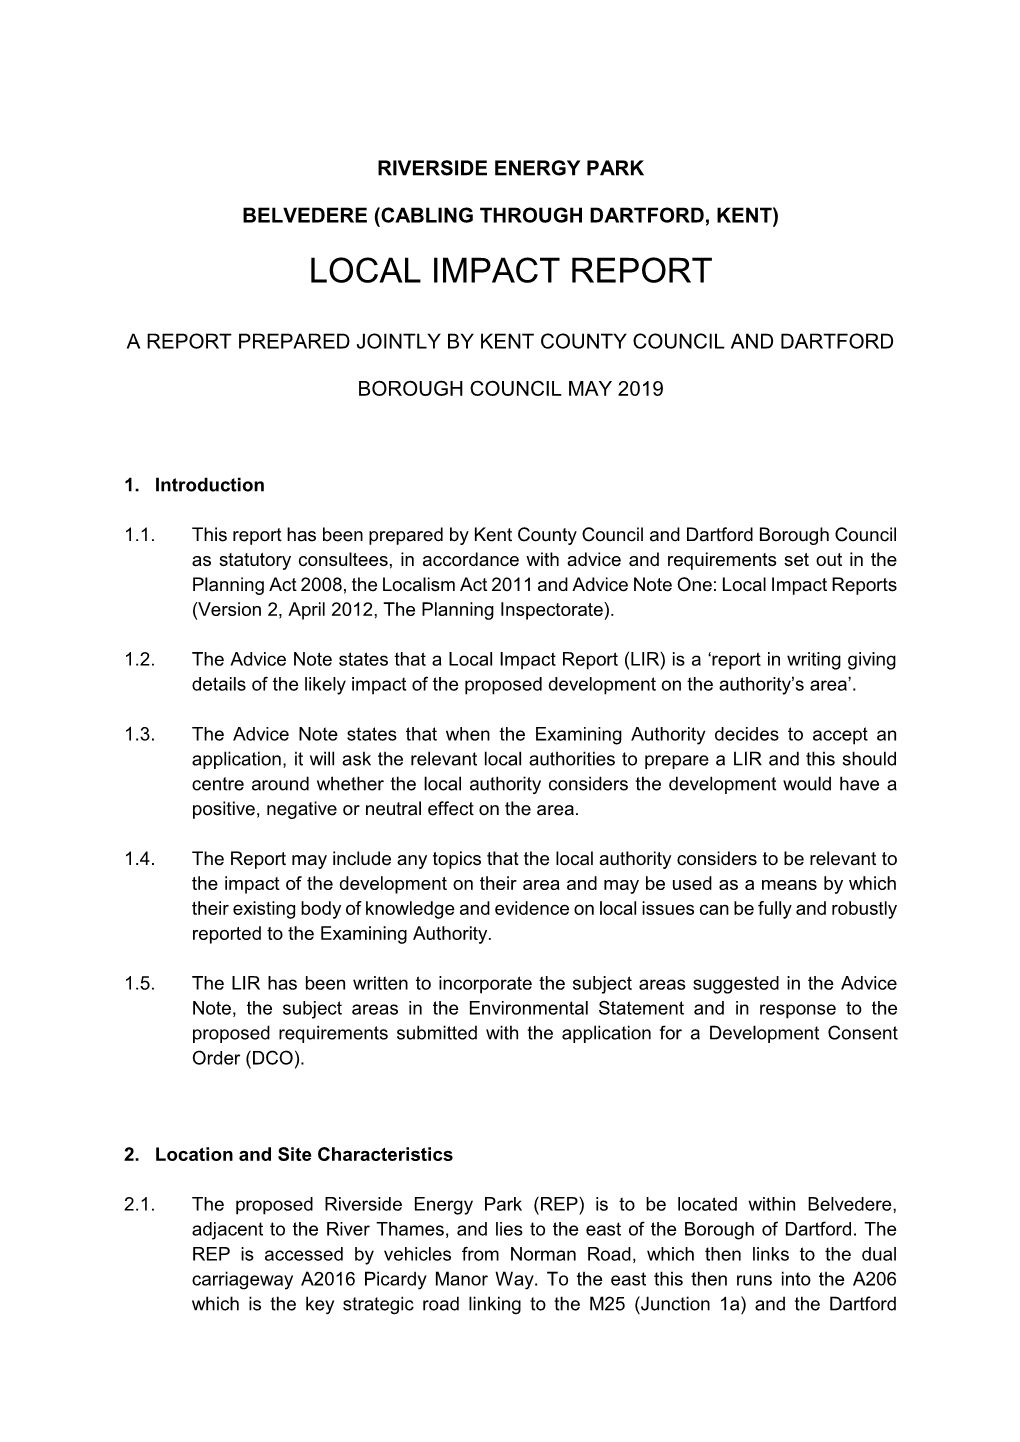 Local Impact Report